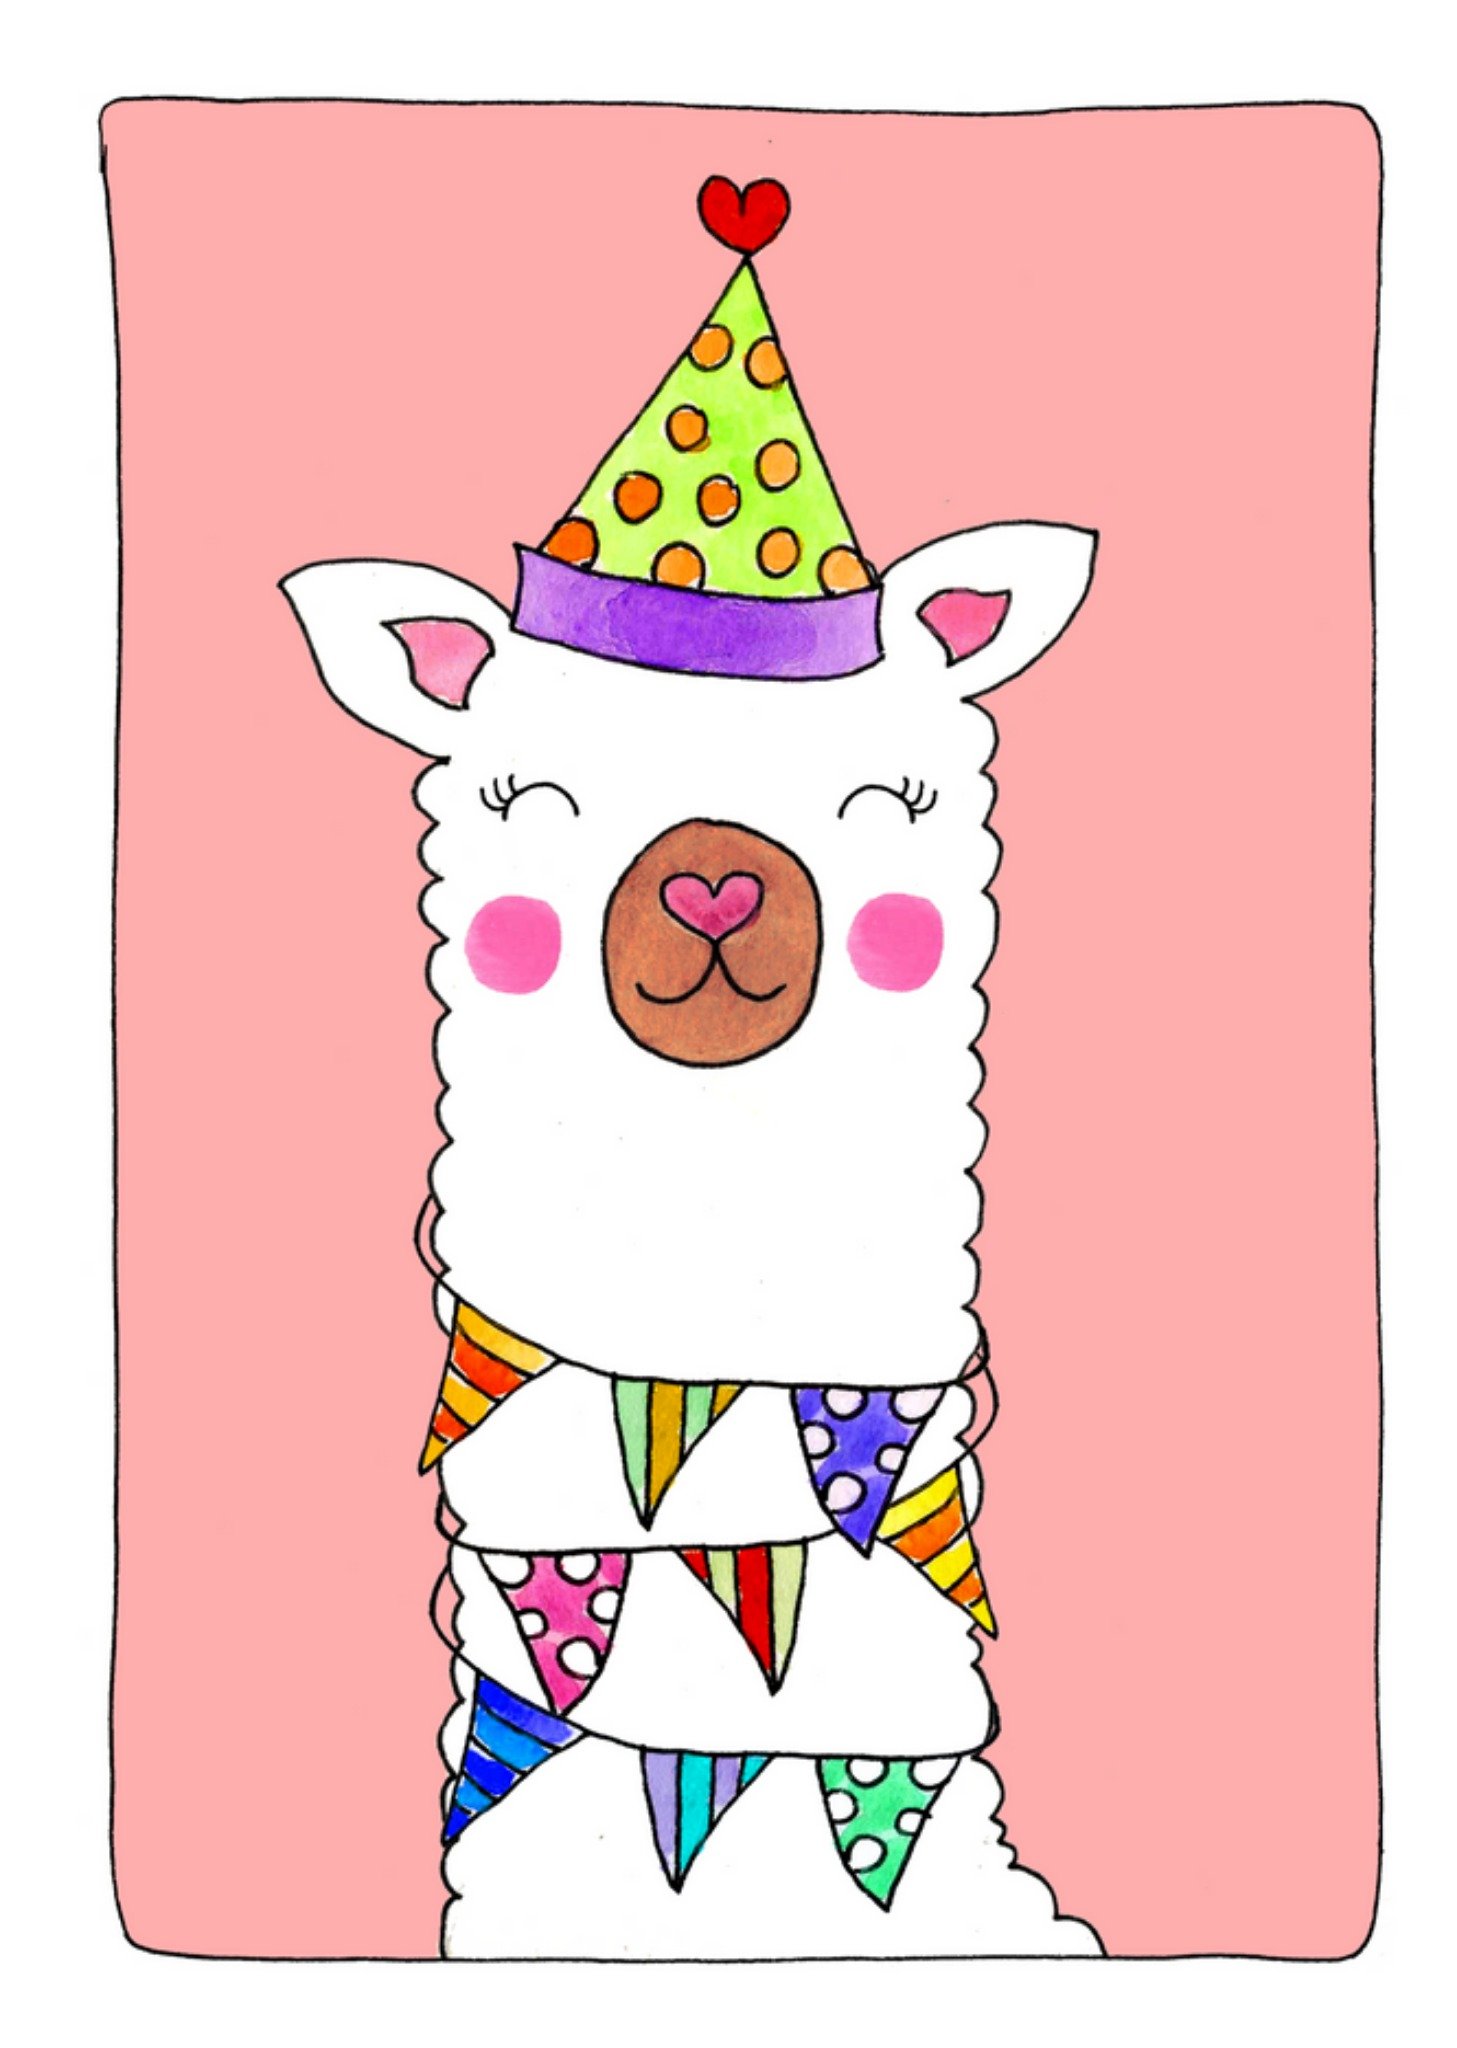 Sandysign - Verjaardagskaart - Schattig feest alpaca